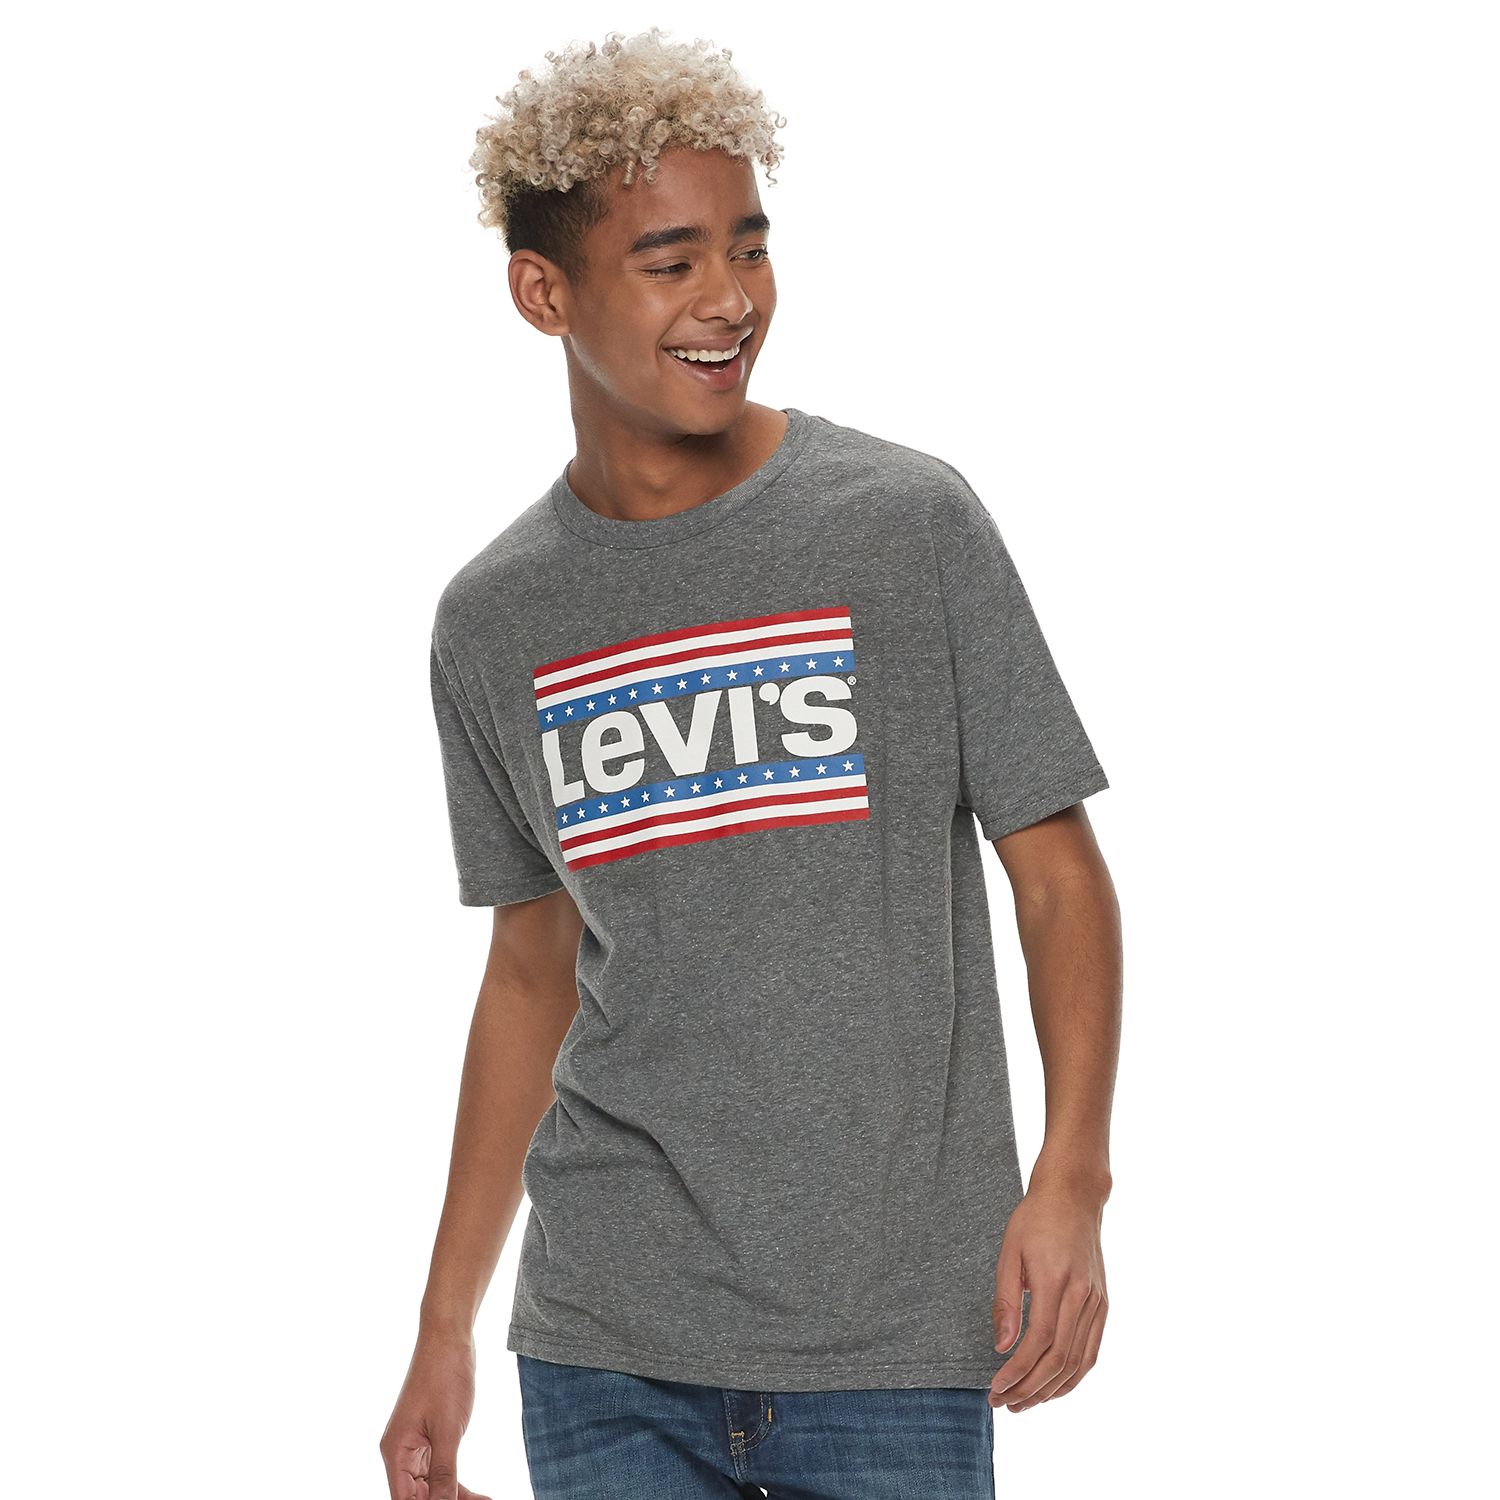 kohl's levi's t shirts